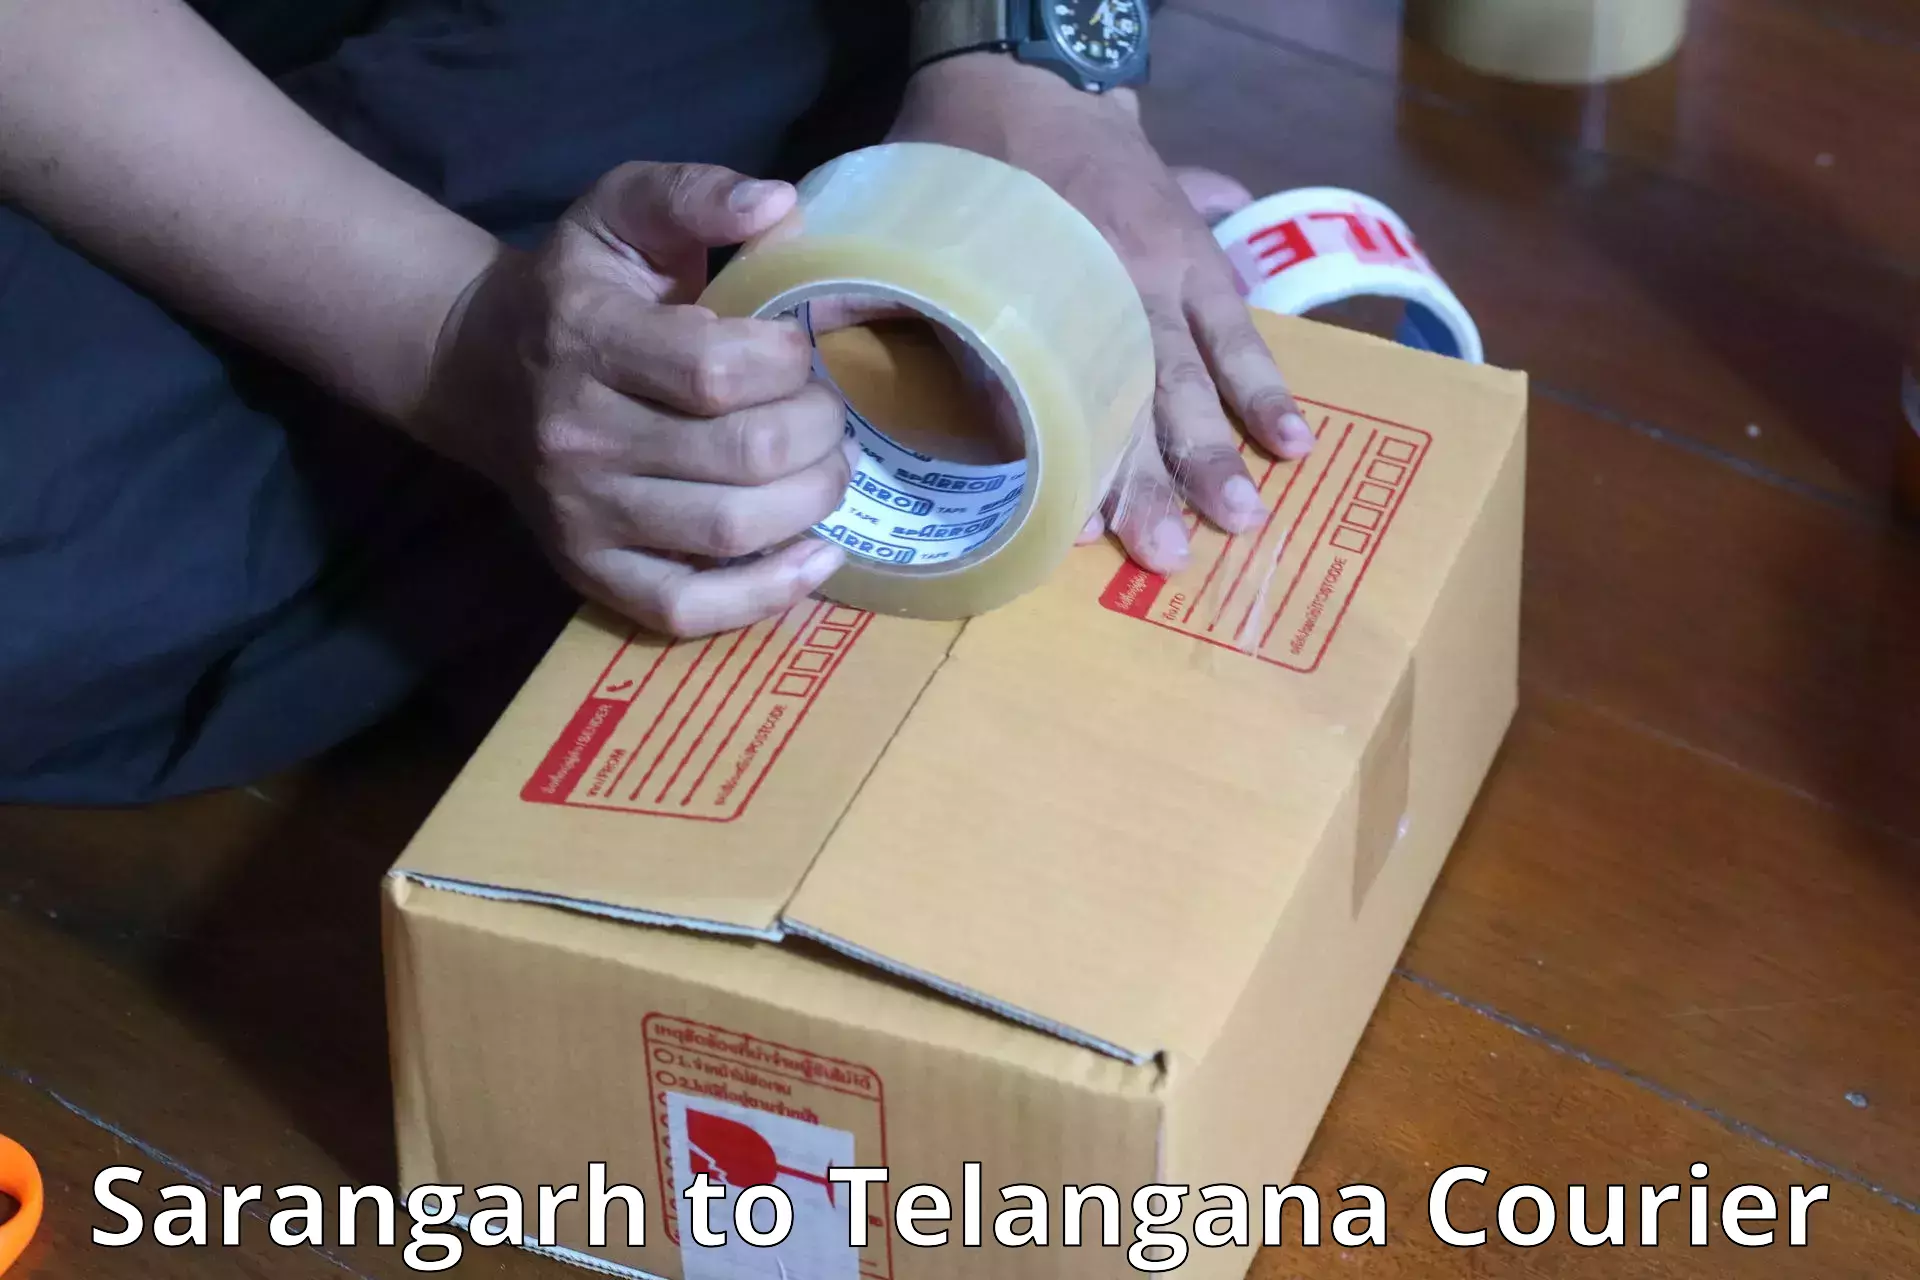 Baggage shipping service Sarangarh to Telangana